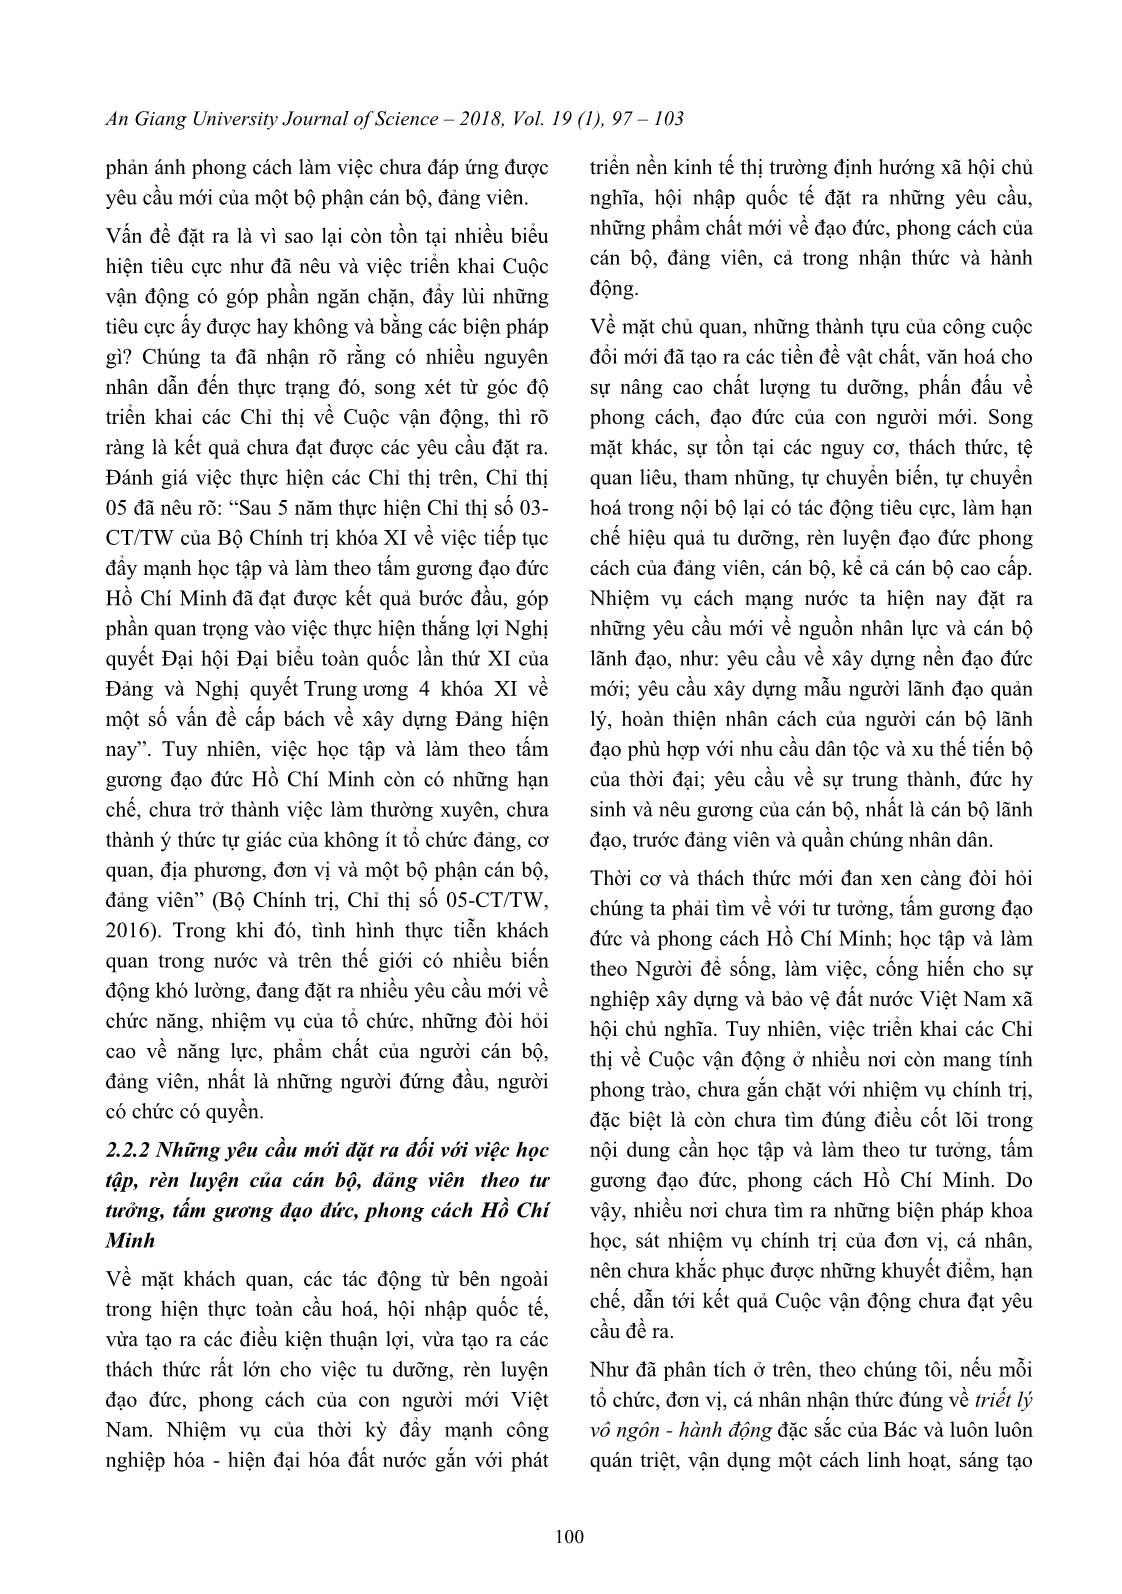 Vận dụng triết lý vô ngôn - Hành động của Bác Hồ trong triển khai “Học tập và làm theo tư tưởng, tấm gương đạo đức, phong cách Hồ Chí Minh” trang 4